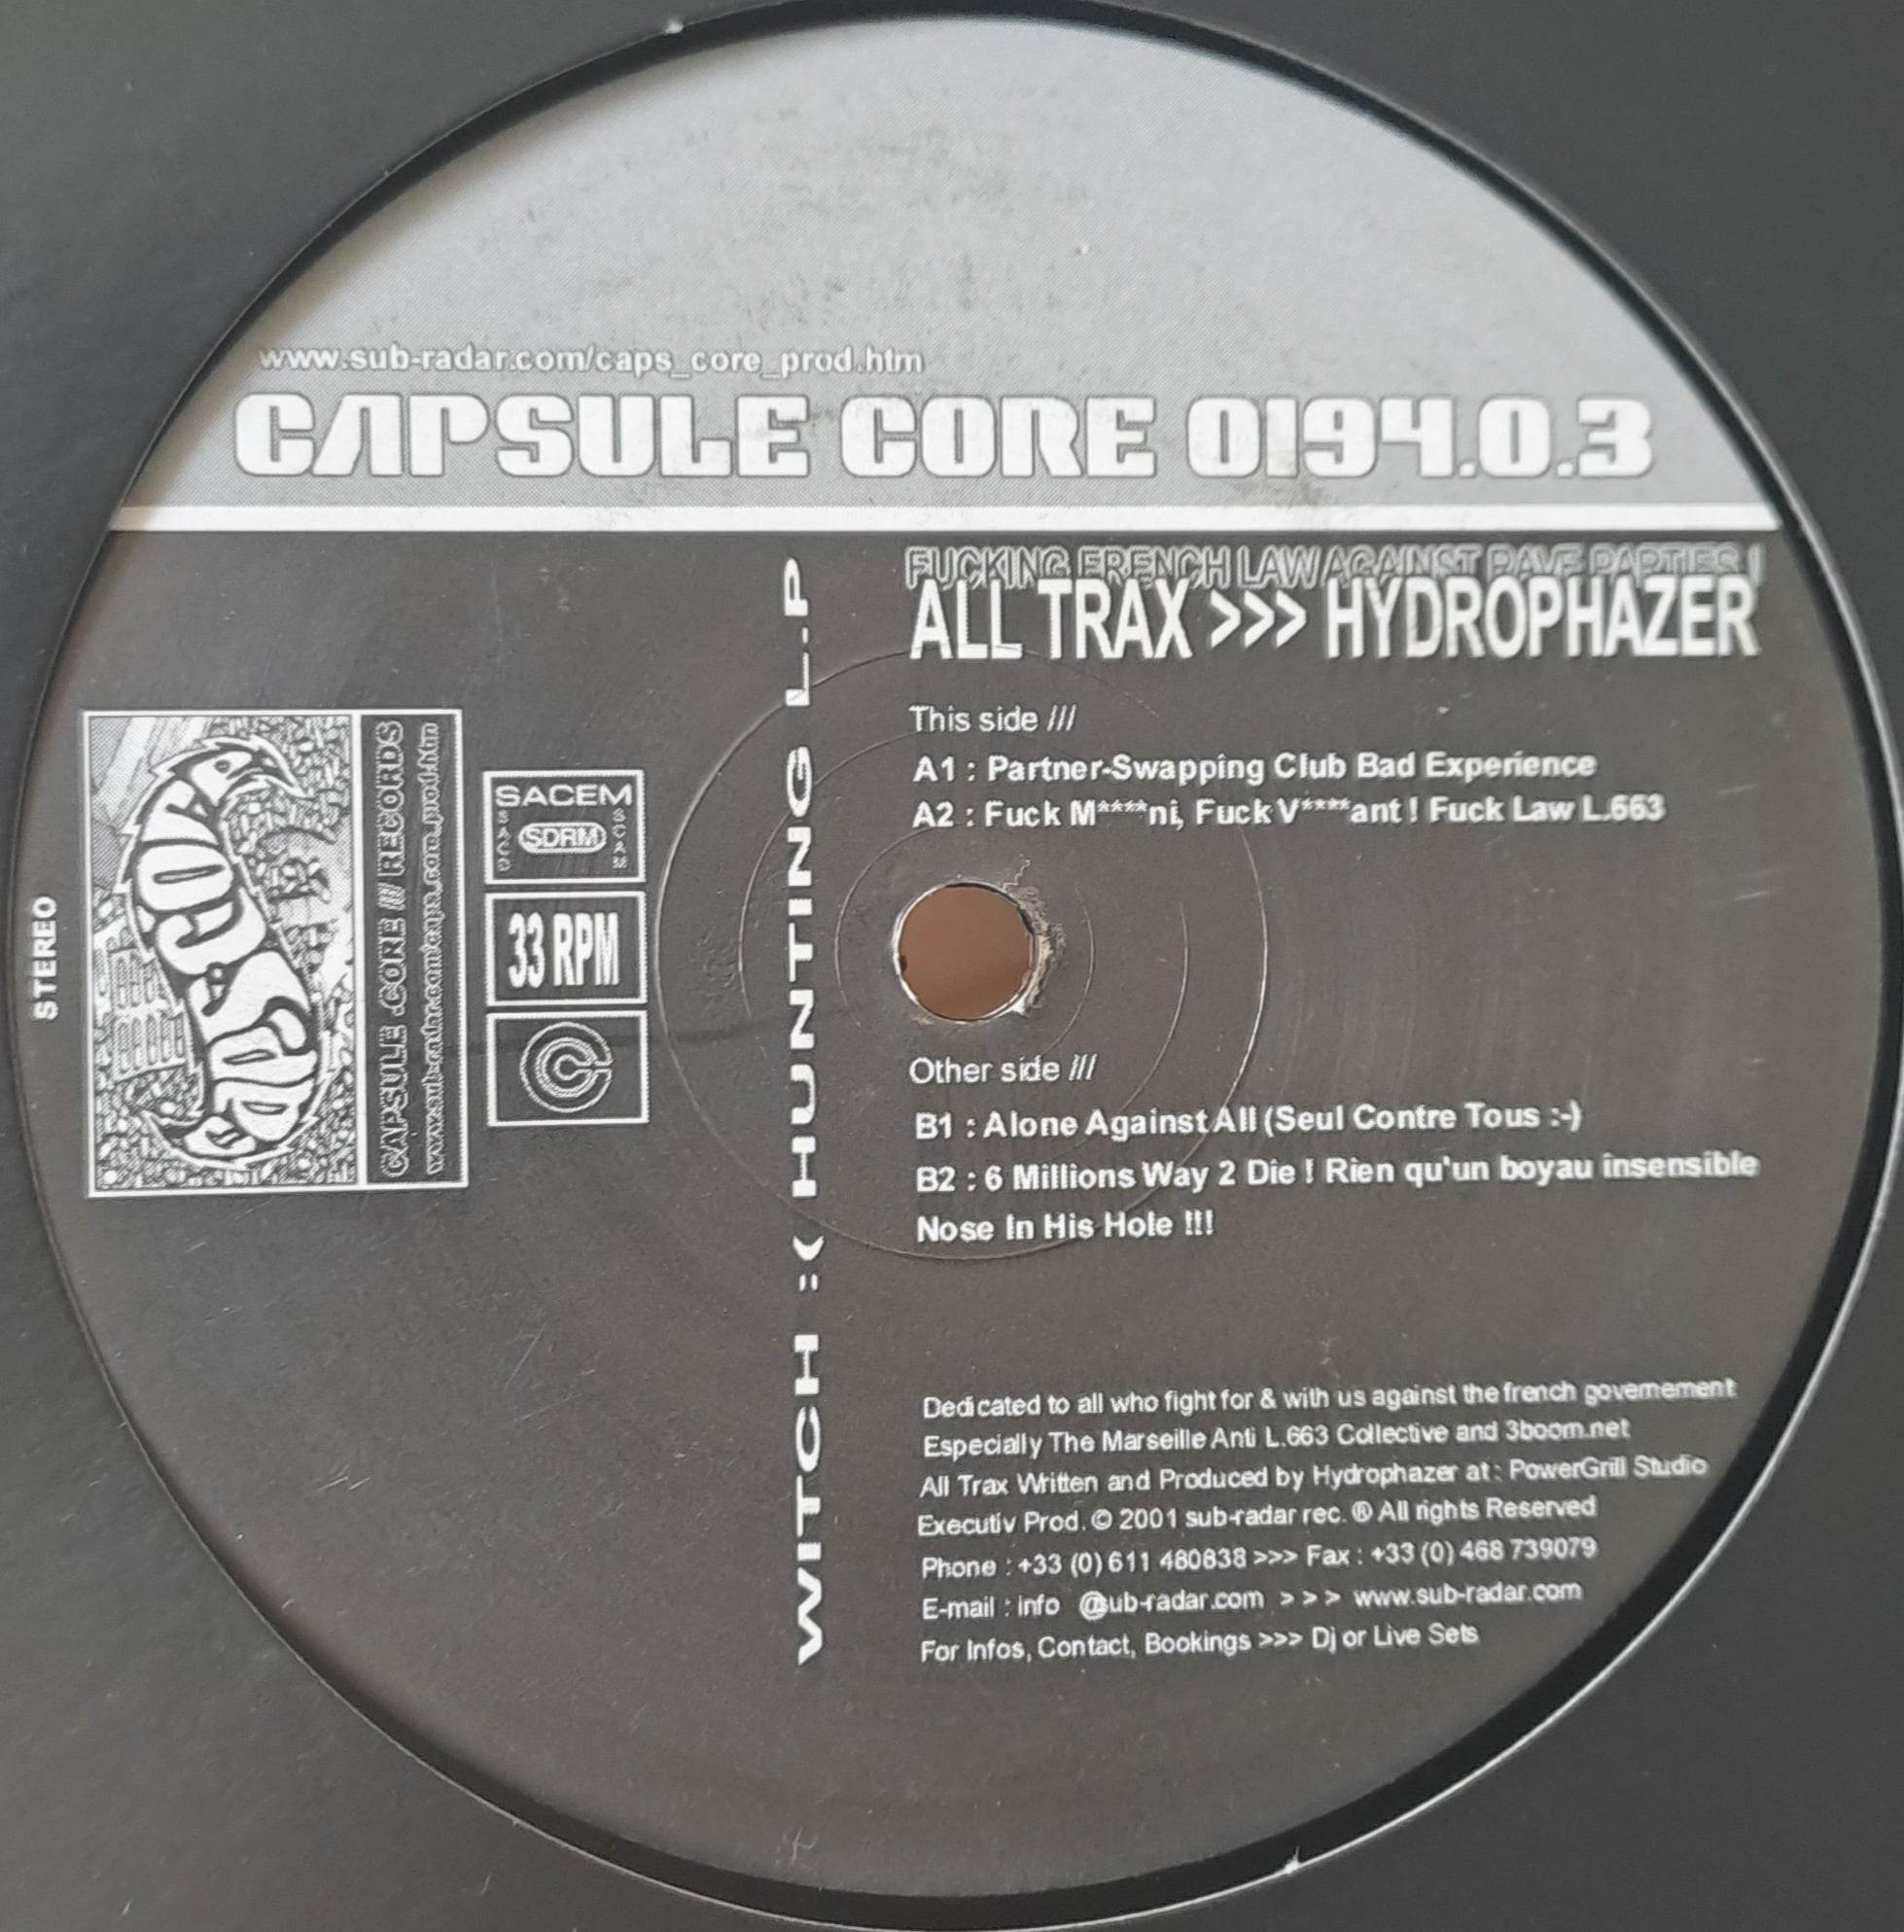 1) Capsule Core 03 - vinyle hardcore